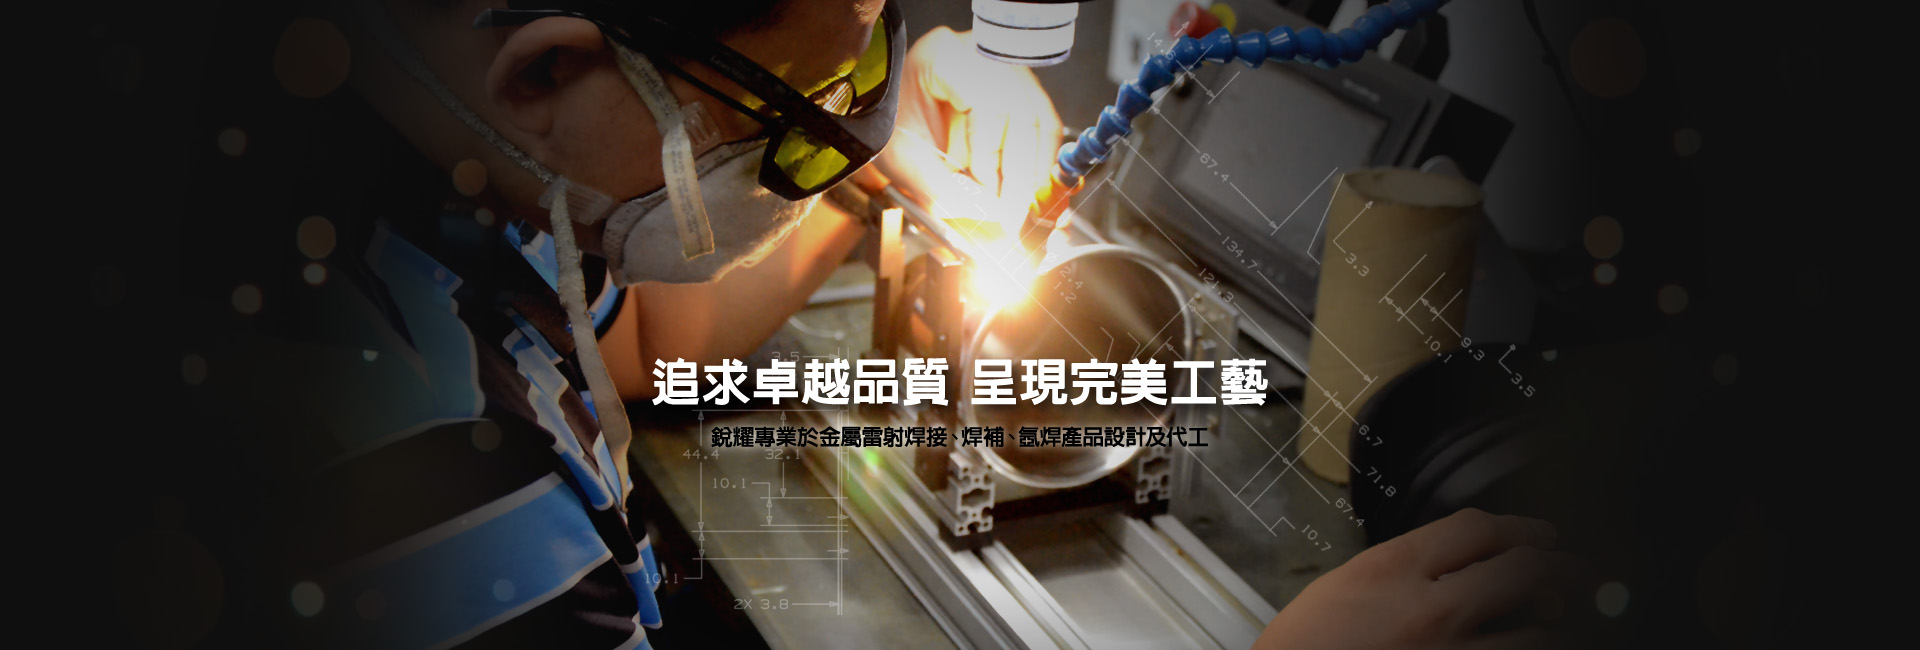 銳耀是專業金屬雷射焊接、焊補、氬焊產品設計及代工